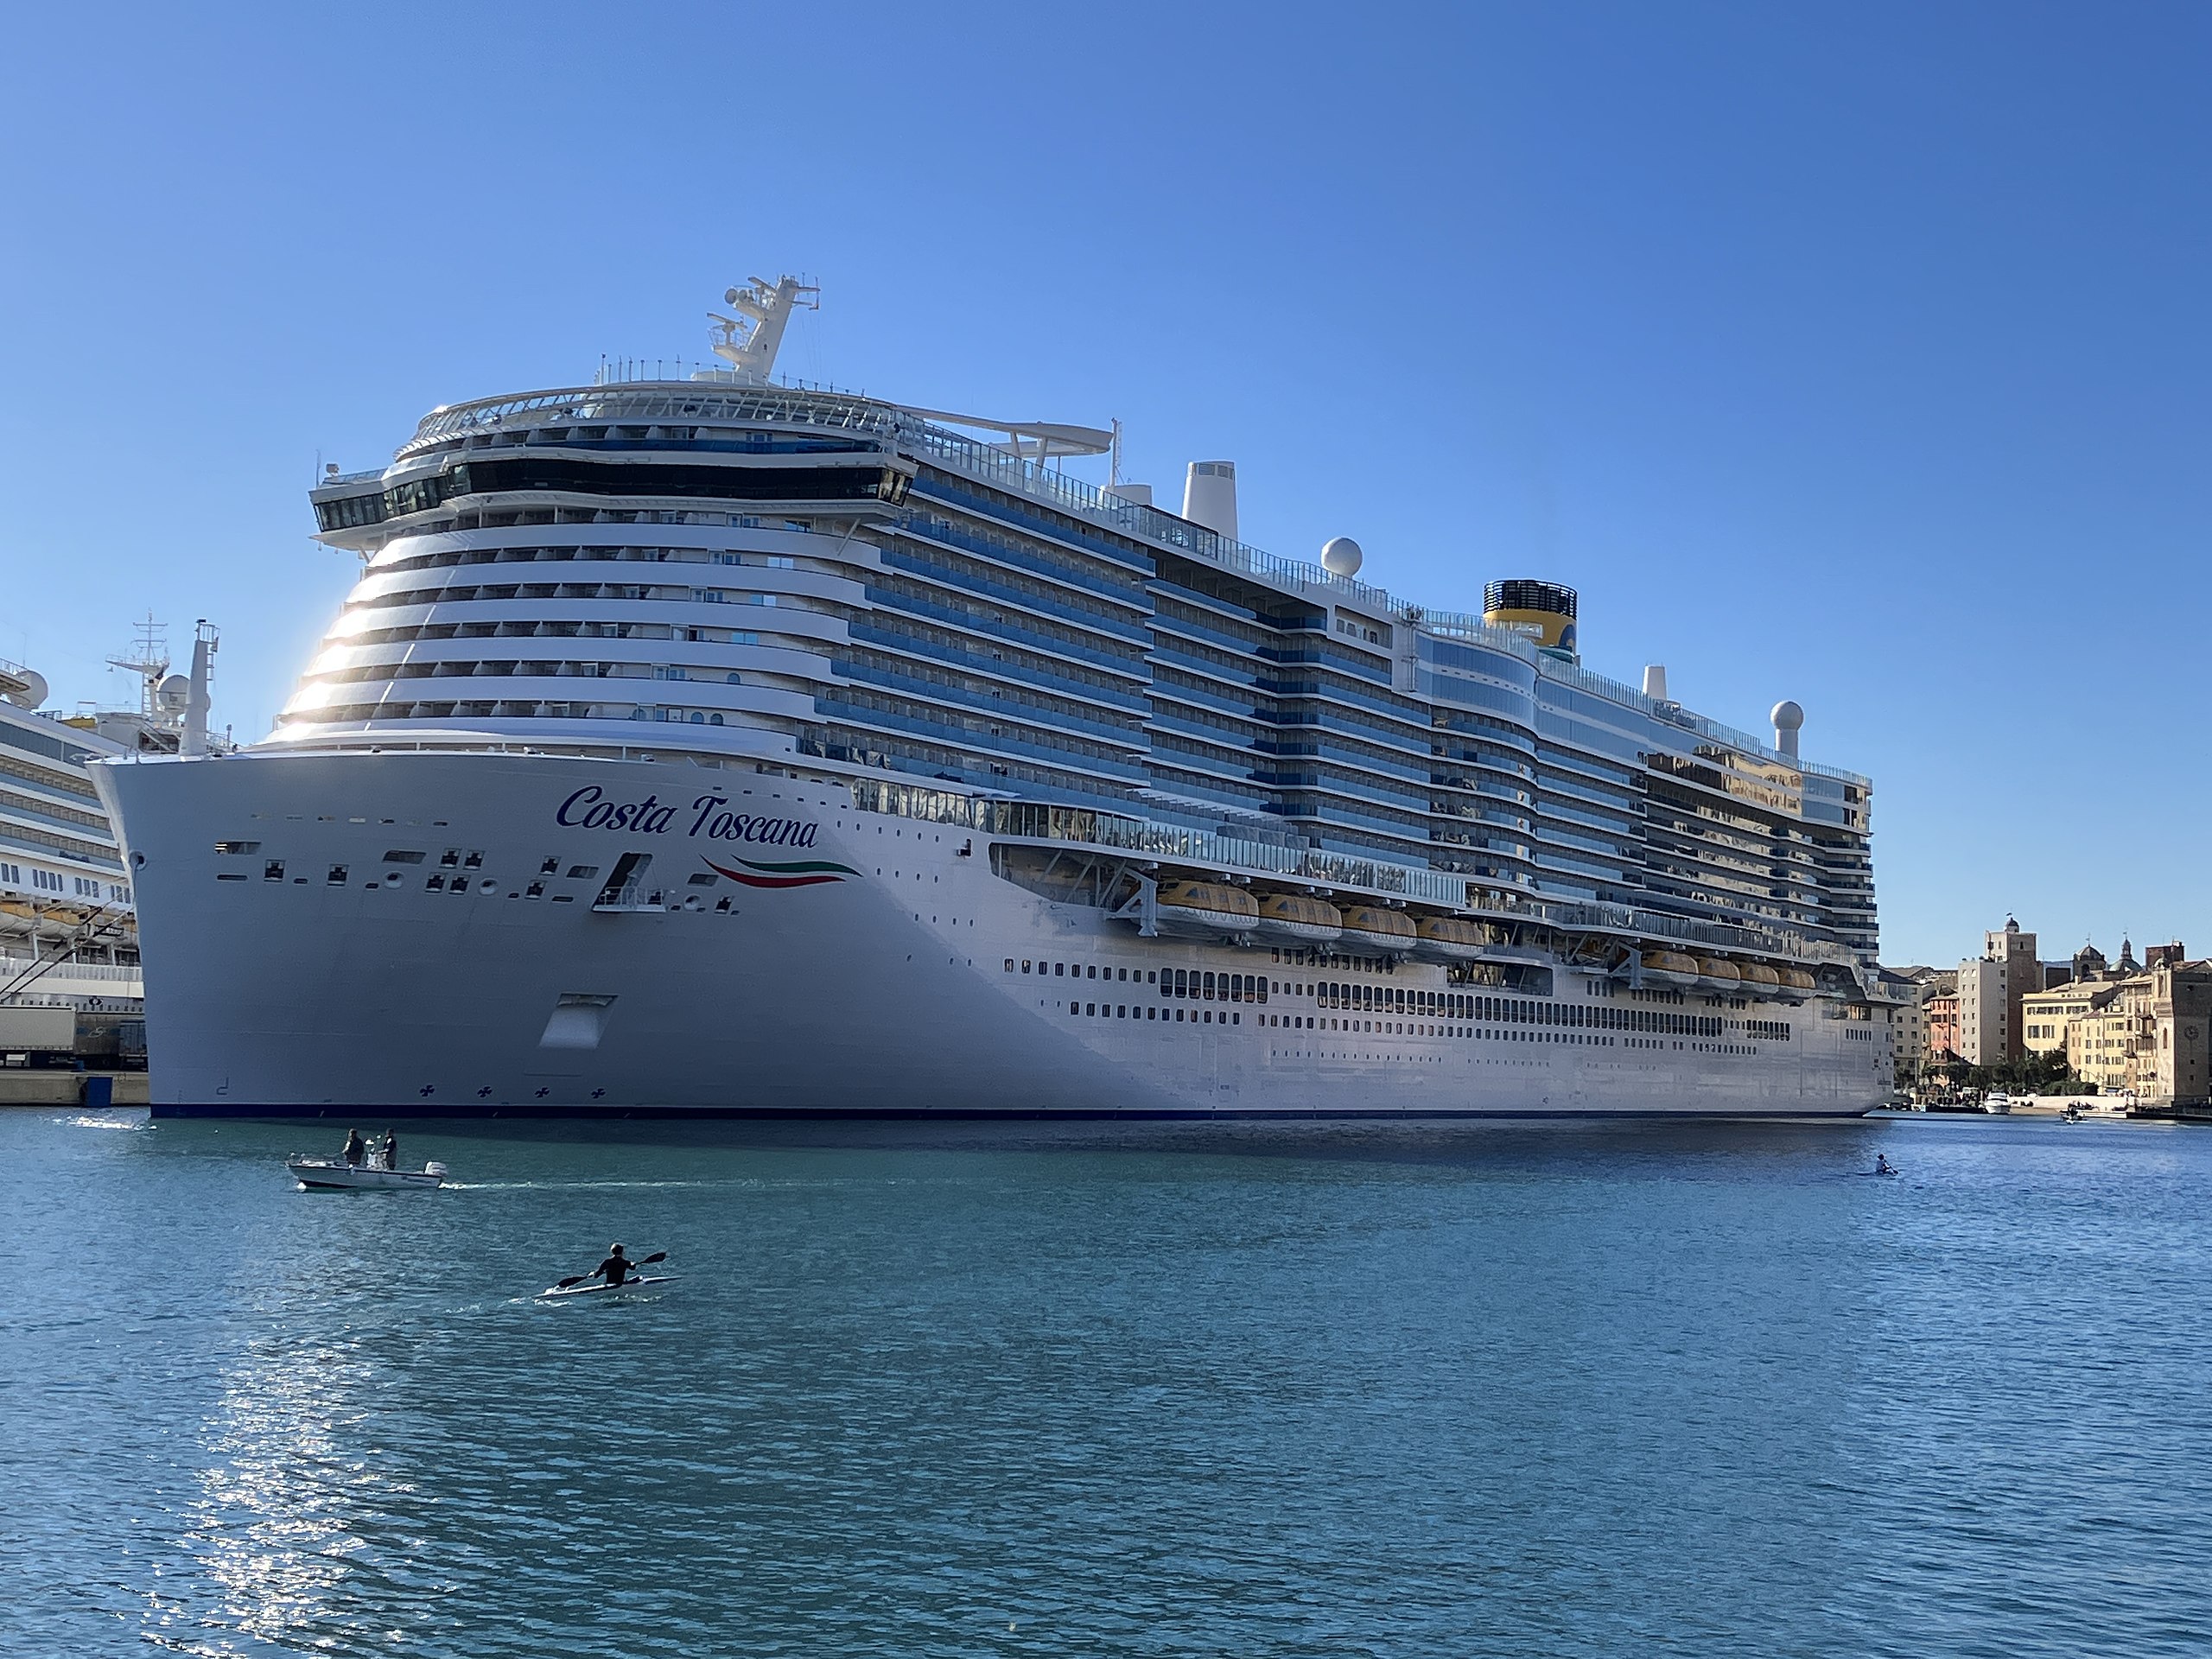 costa toscana cruise ship capacity